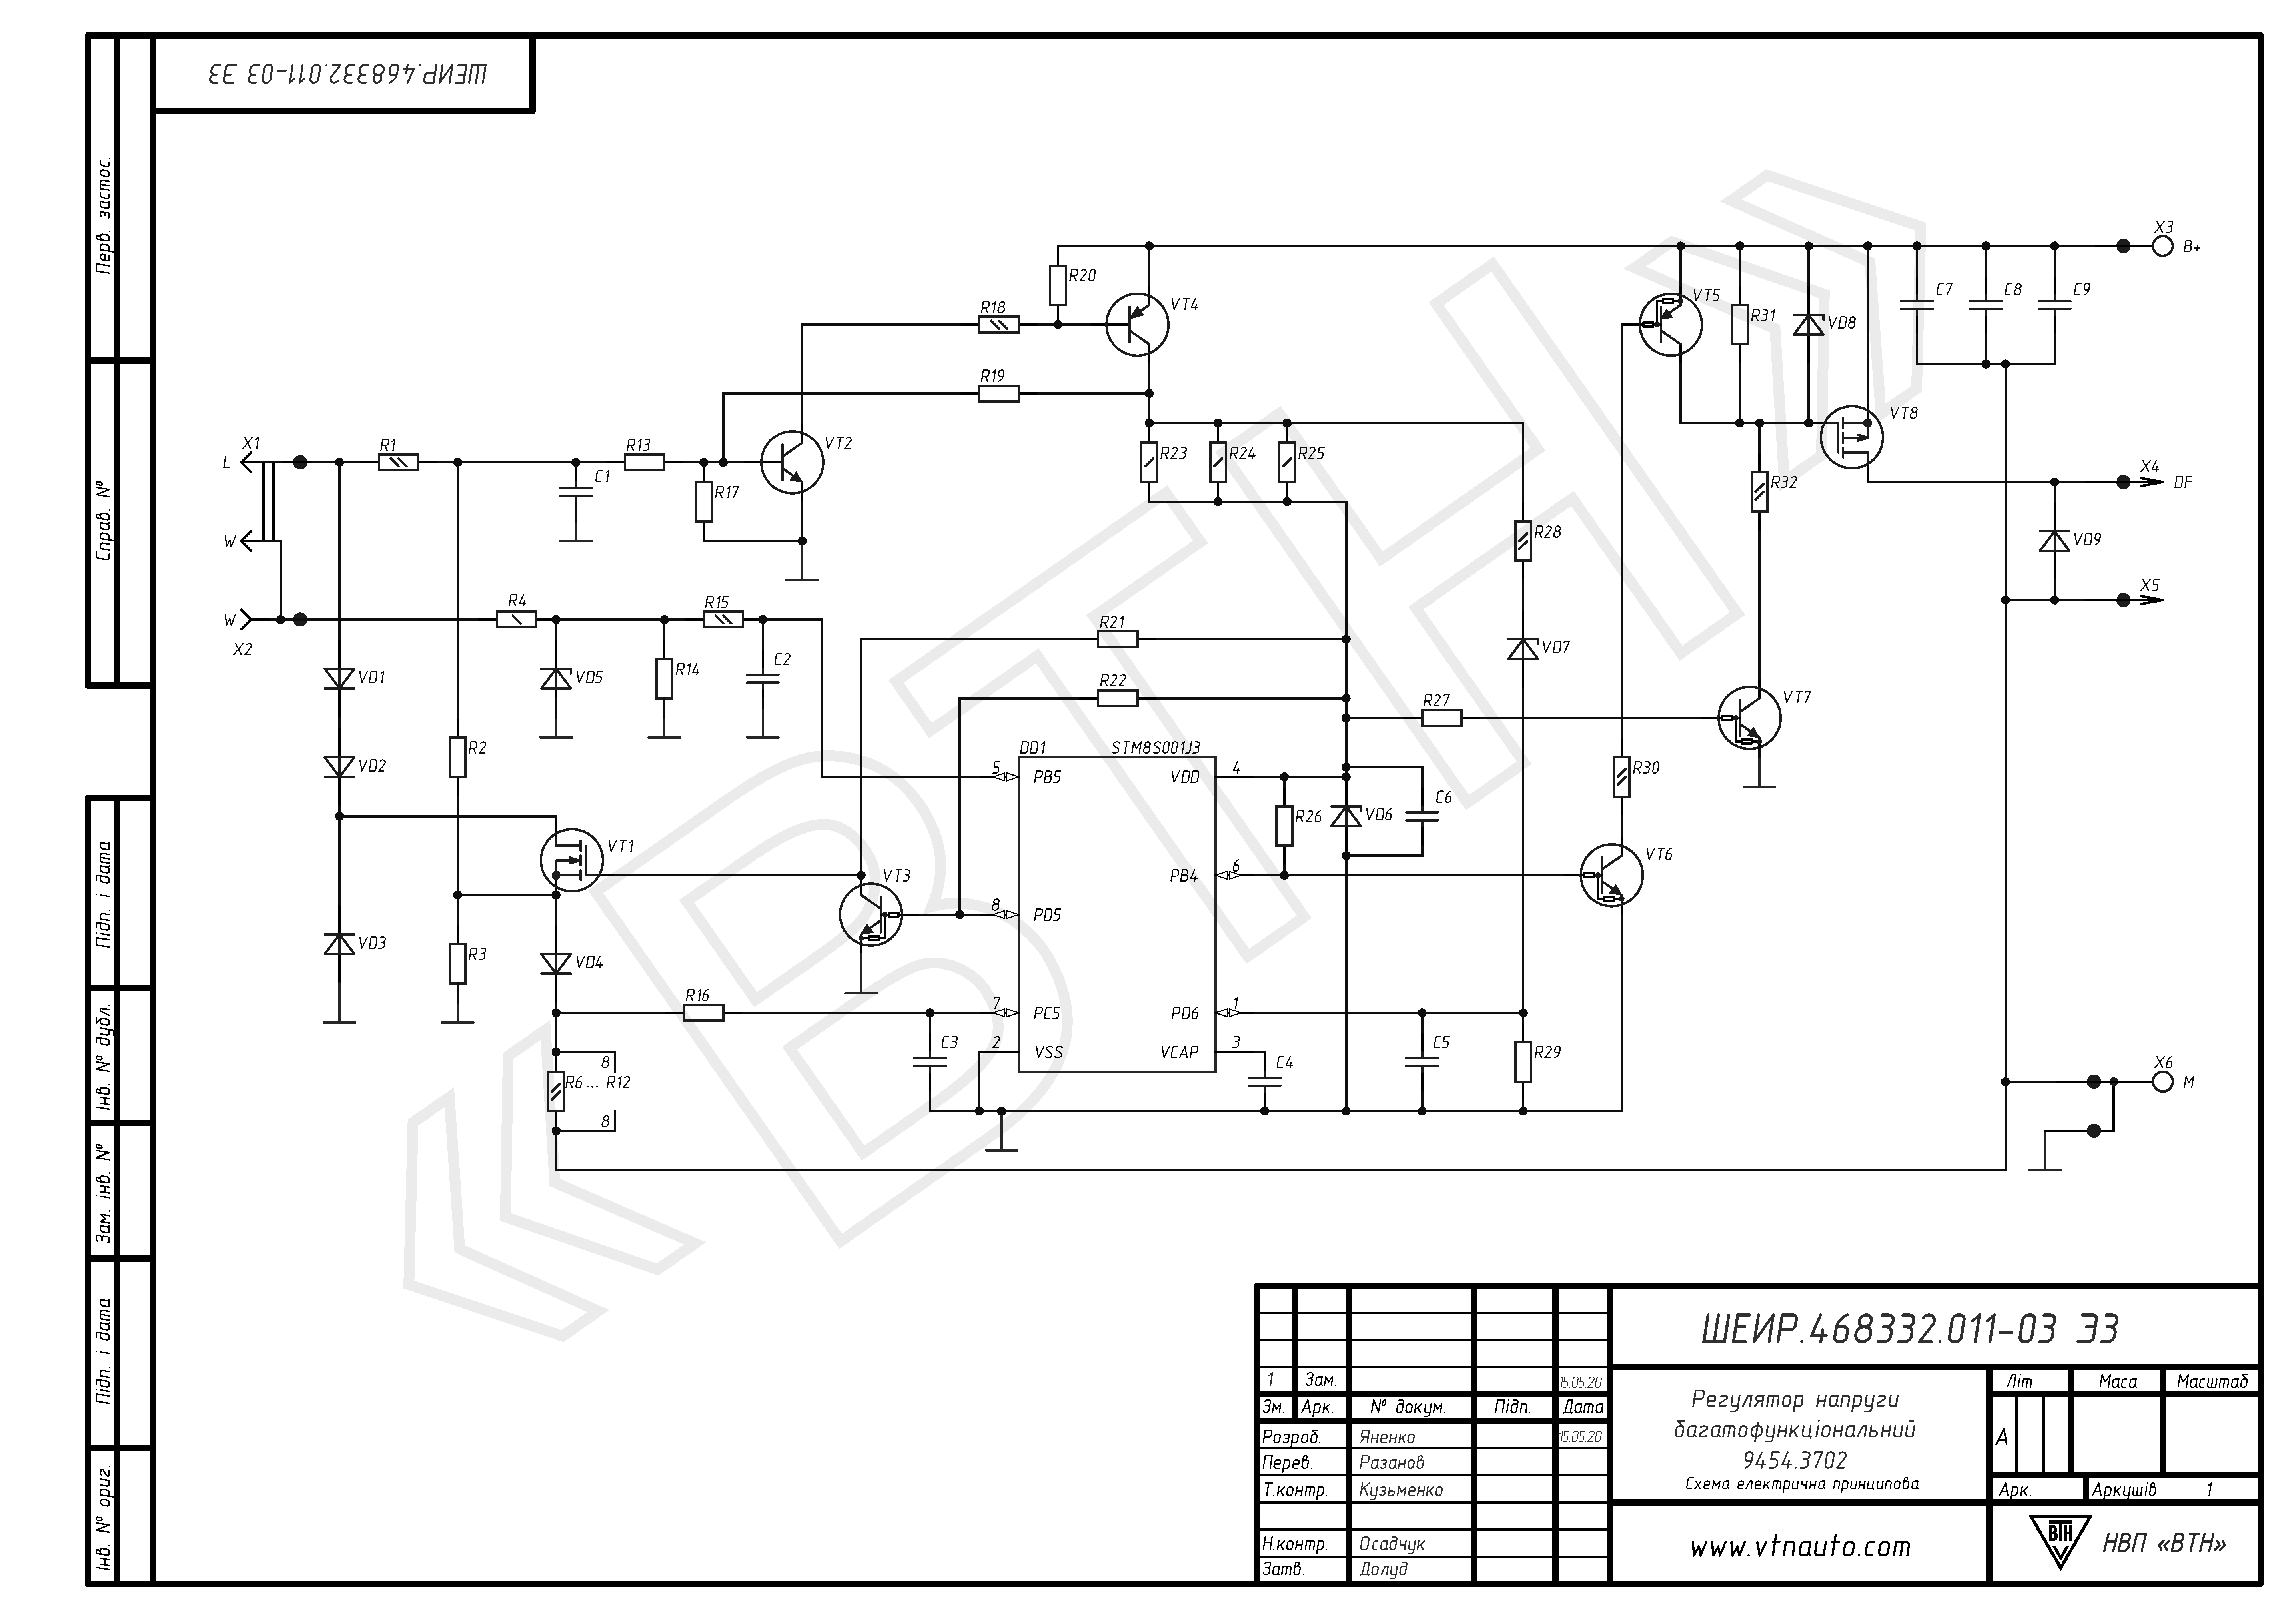 Circuit diagram of voltage regulator 9454.3702